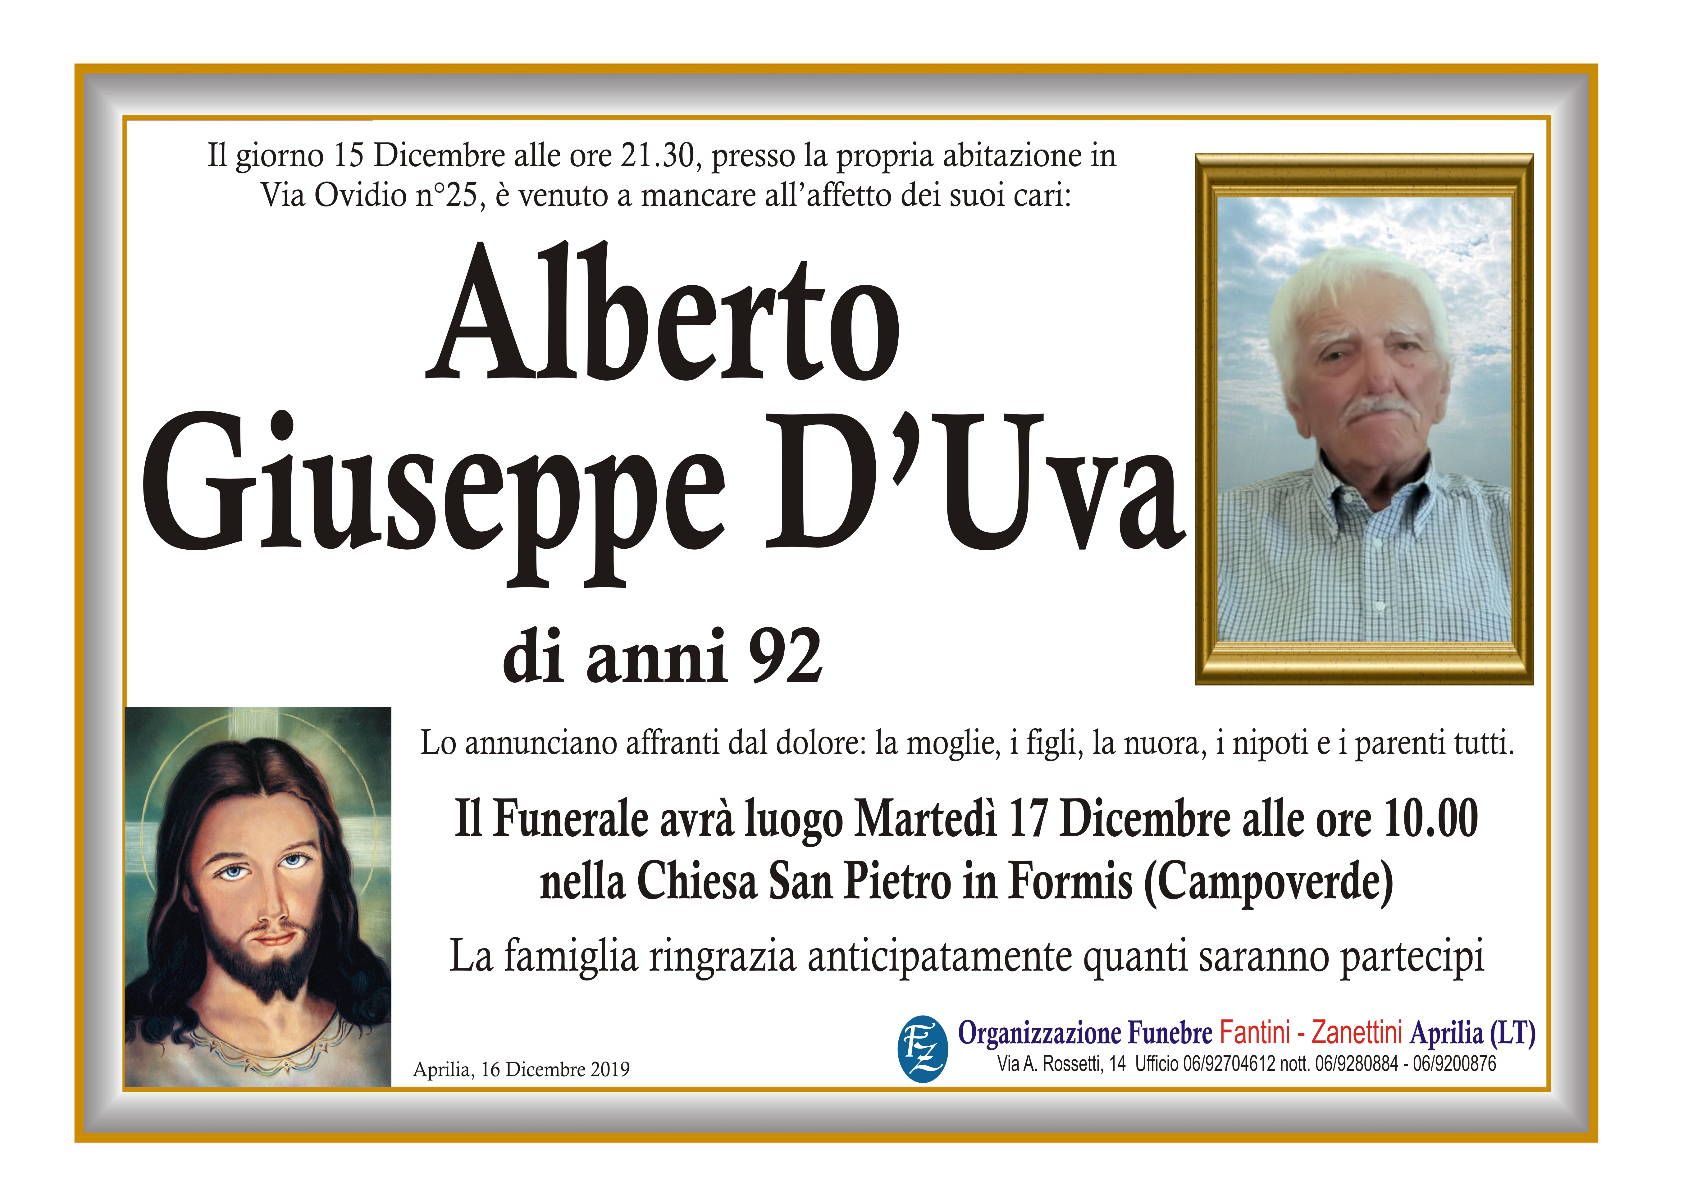 Alberto Giuseppe D’Uva